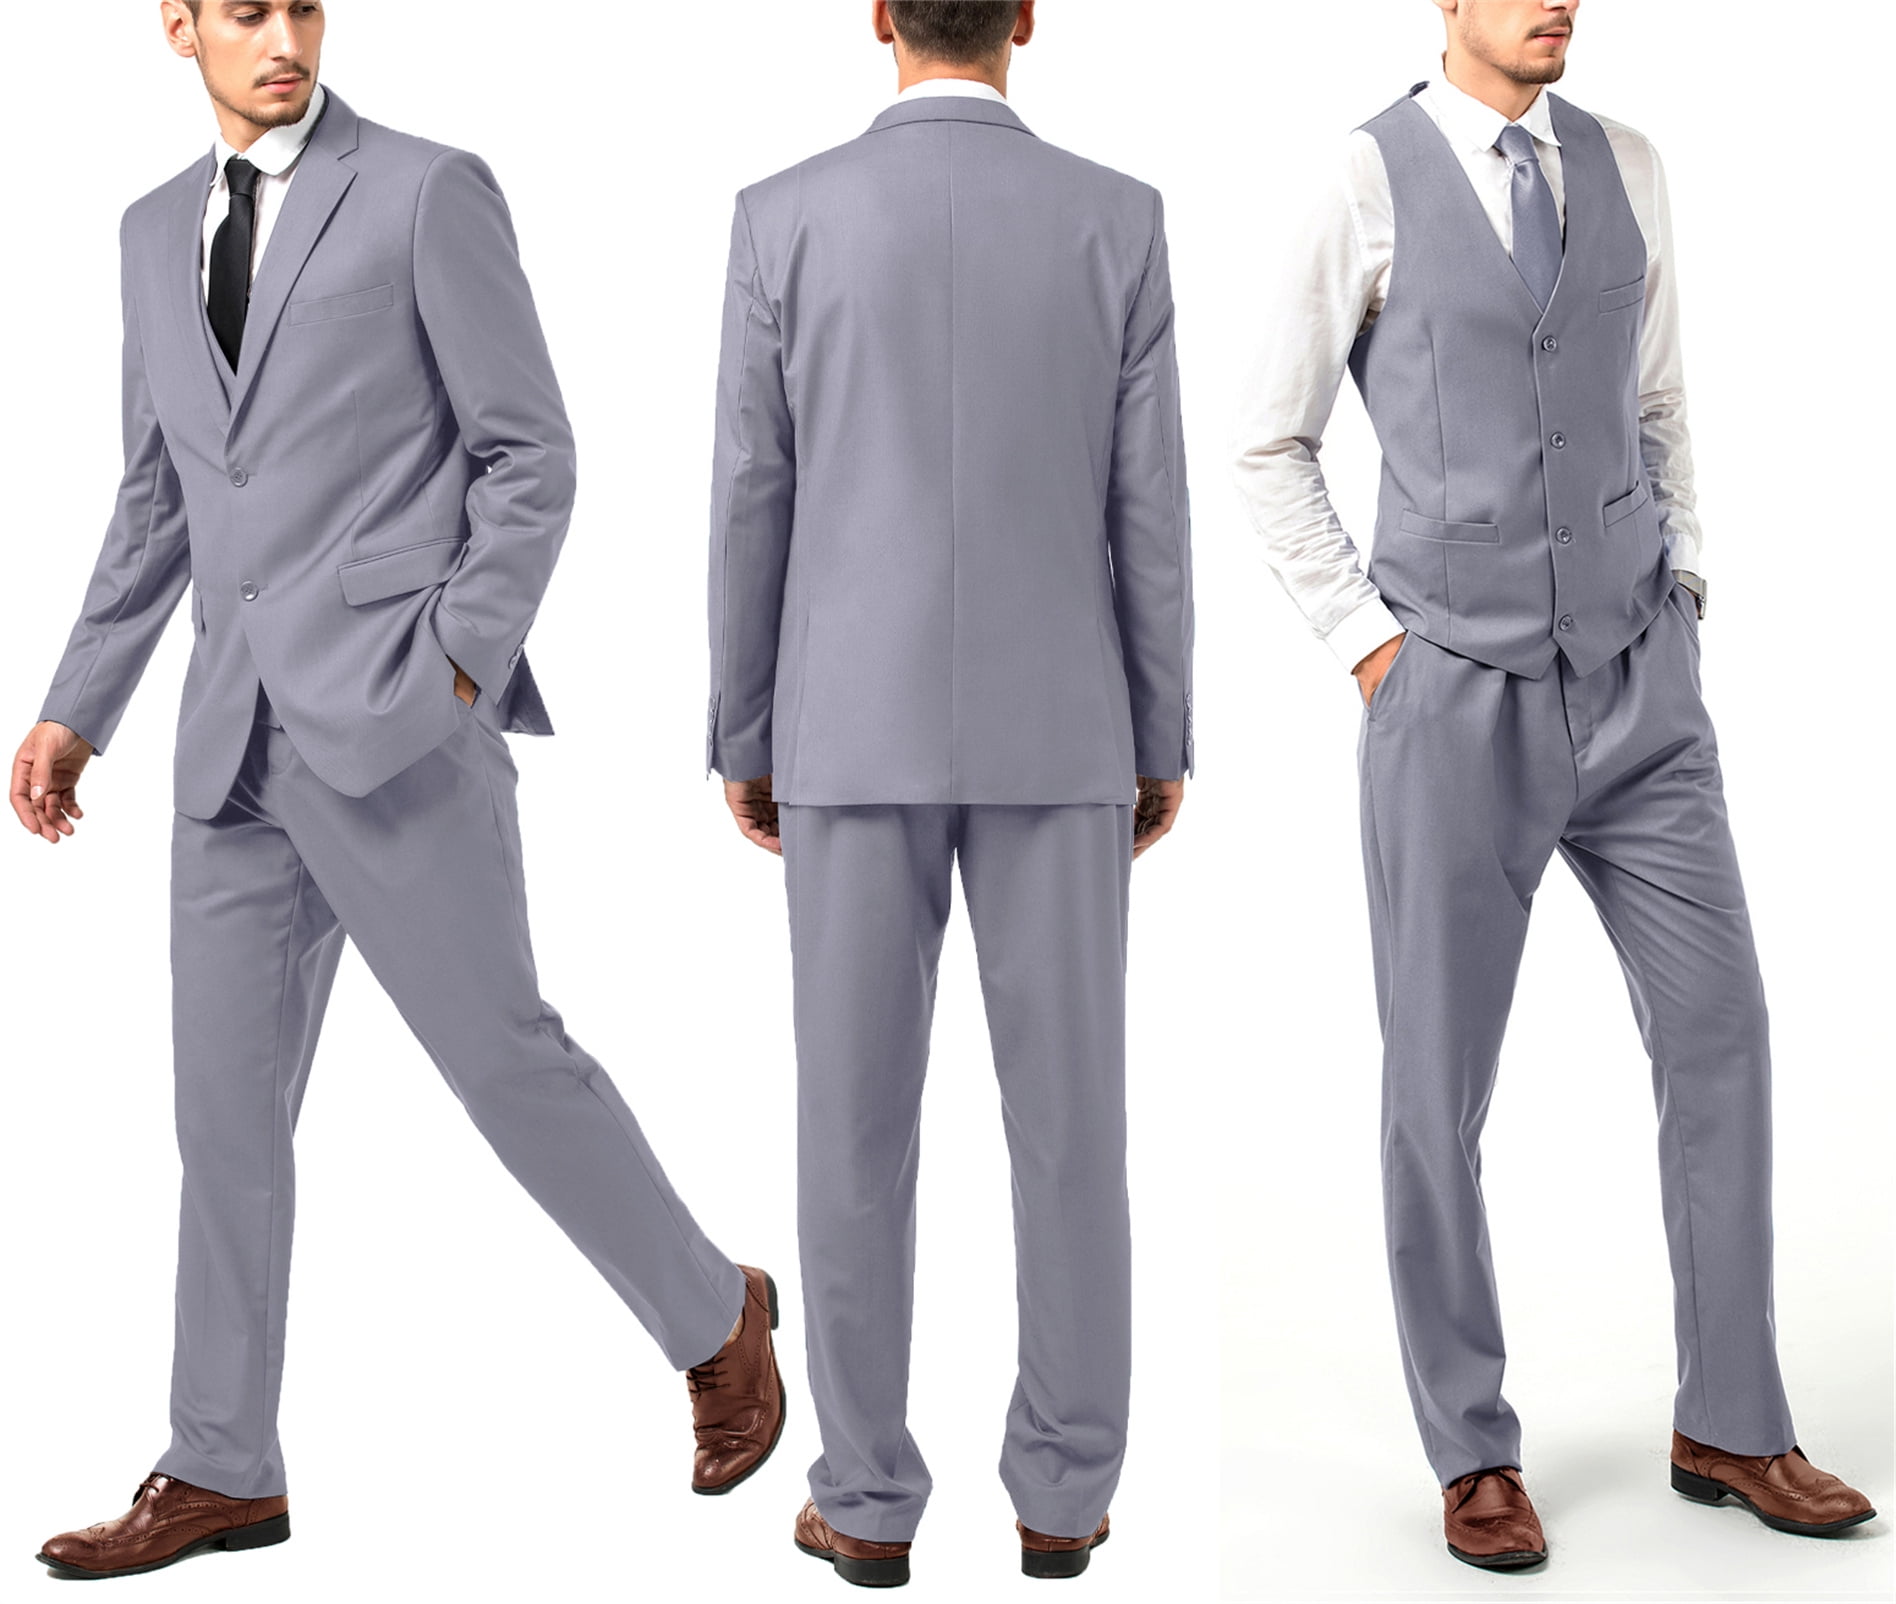 Buy Parx Medium Grey Suit for Men Online @ Tata CLiQ